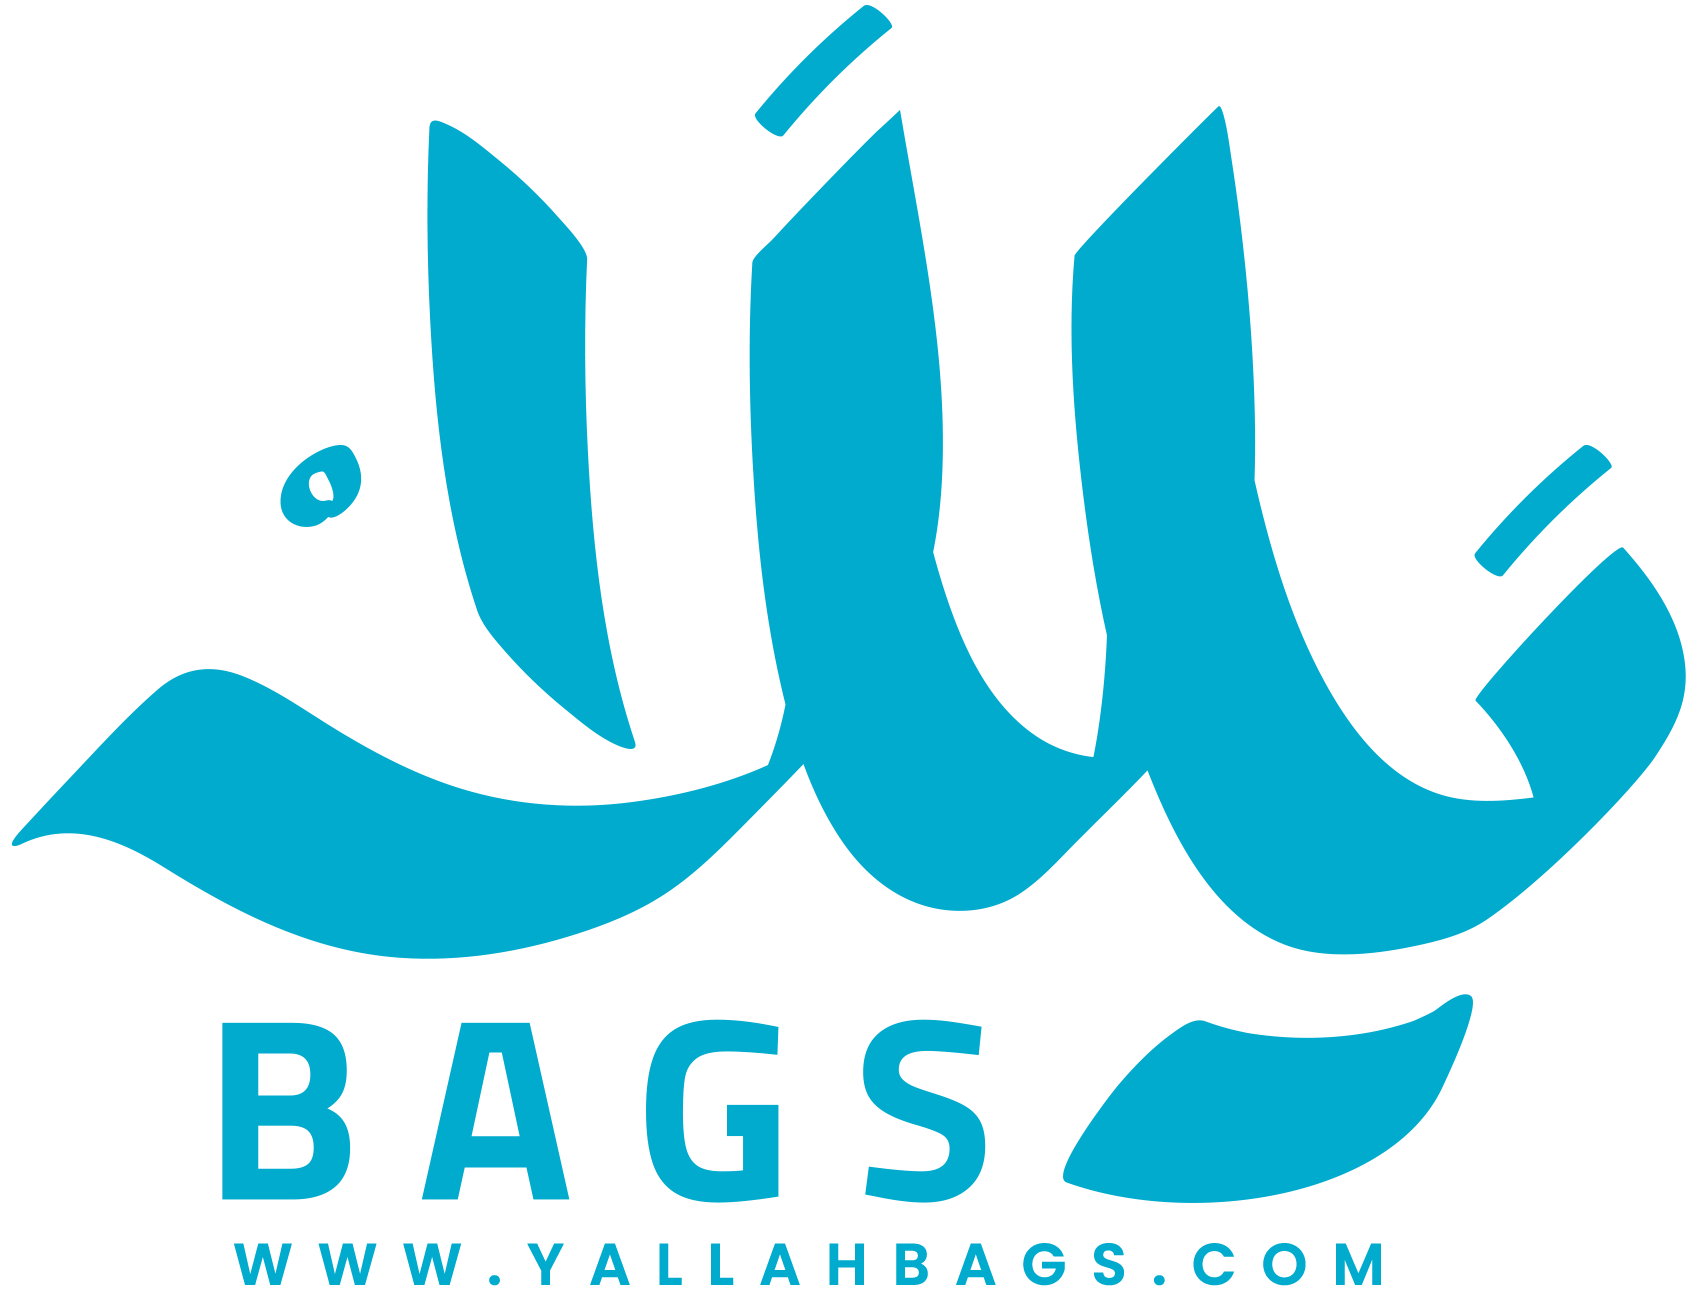 Yallah Bags 